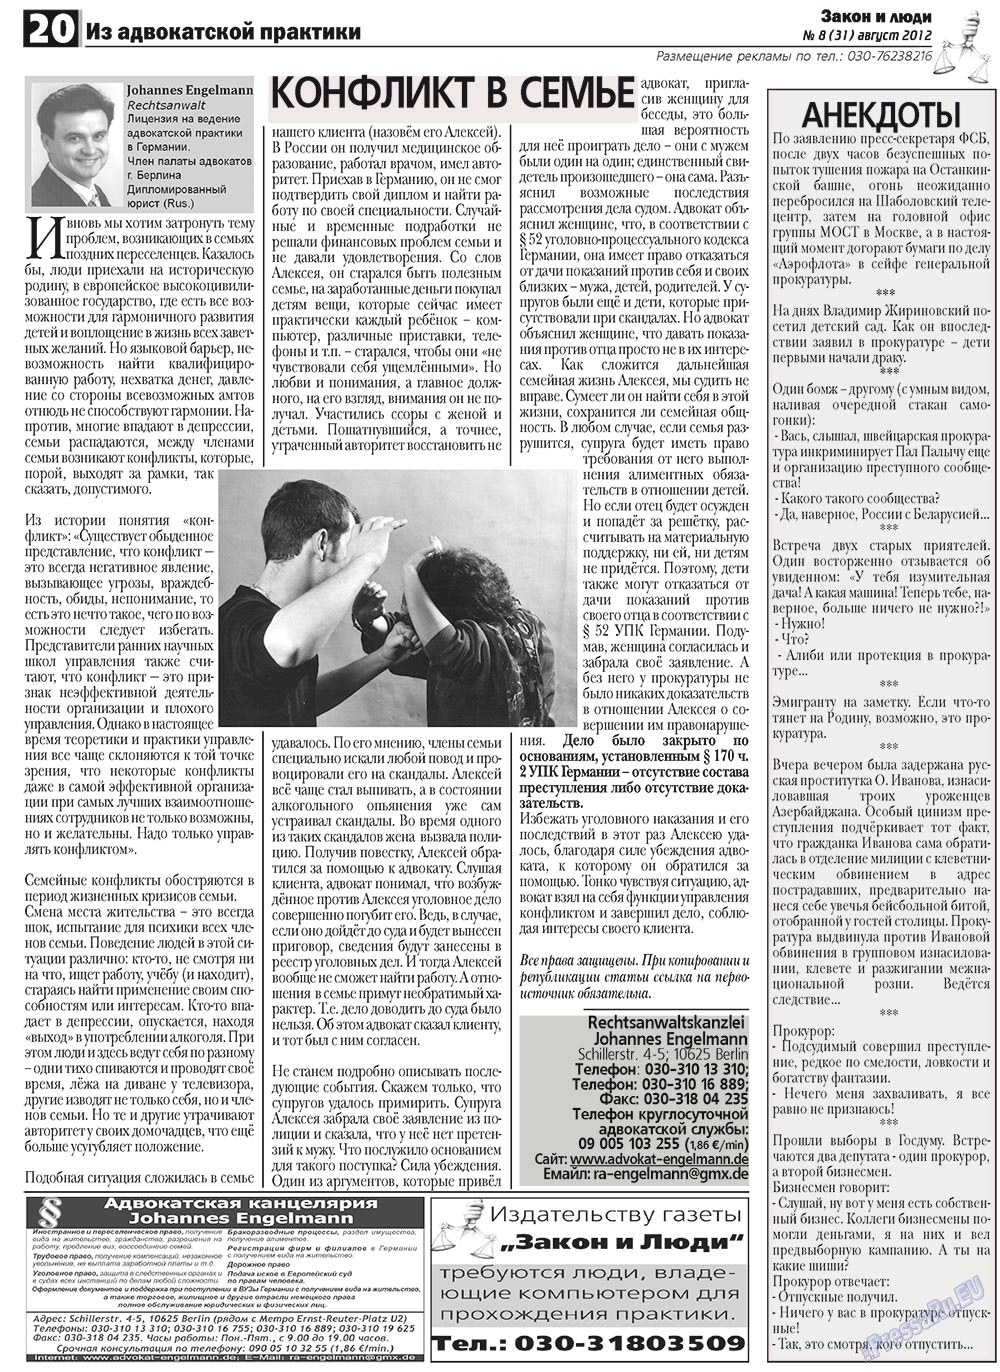 Закон и люди, газета. 2012 №8 стр.20